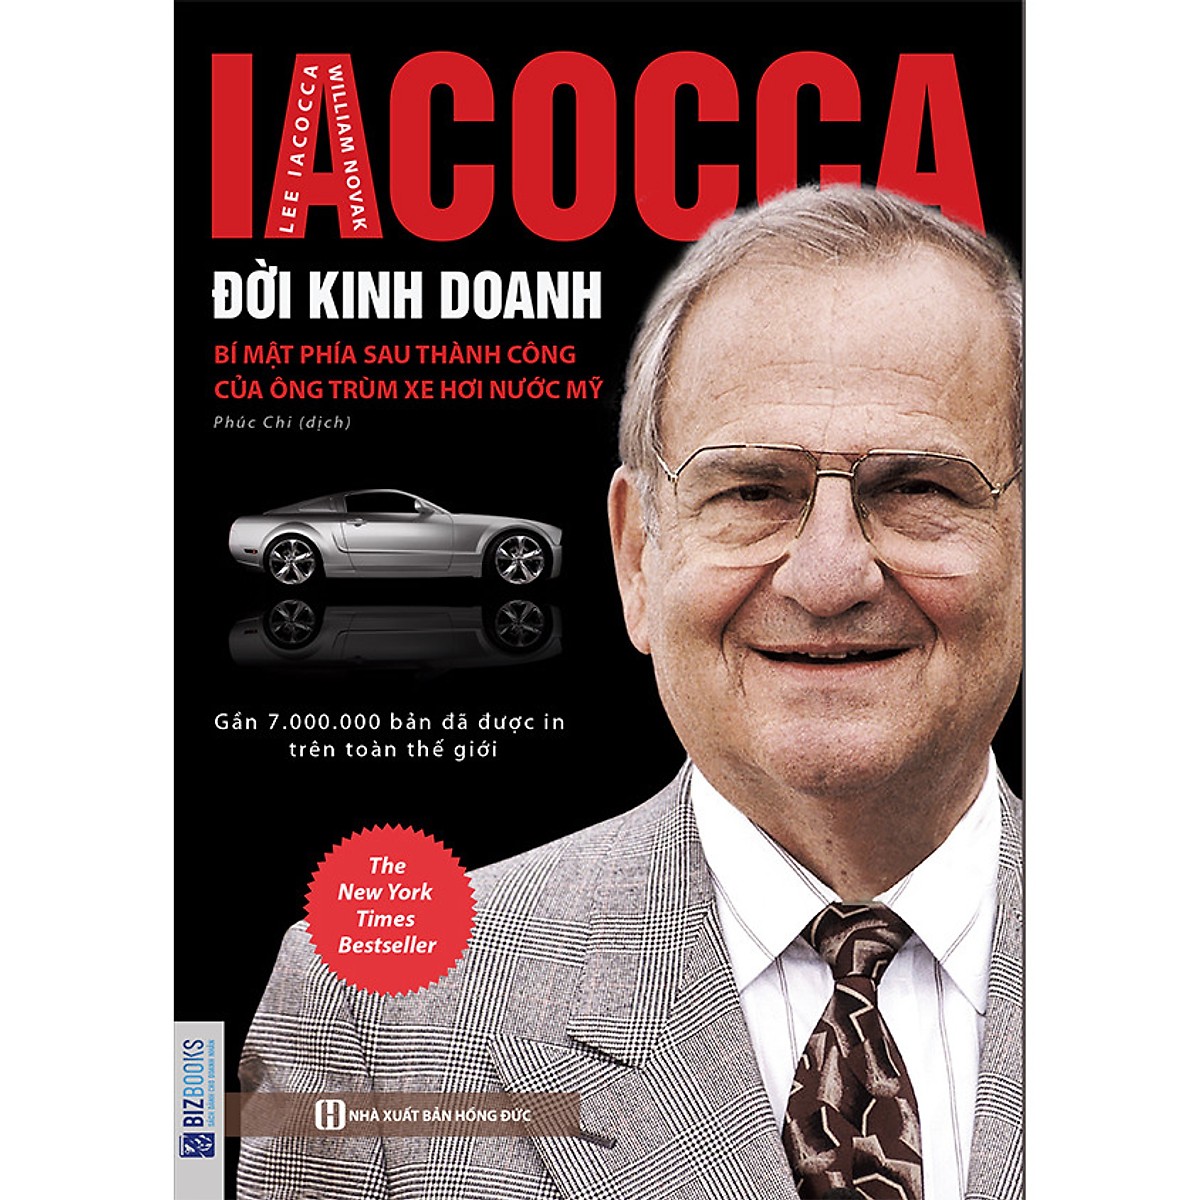 Iacocca – Đời kinh doanh, Bí mật phía sau thành công của ông trùm xe hơi nước Mỹ (tặng sổ tay mini dễ thương KZ)